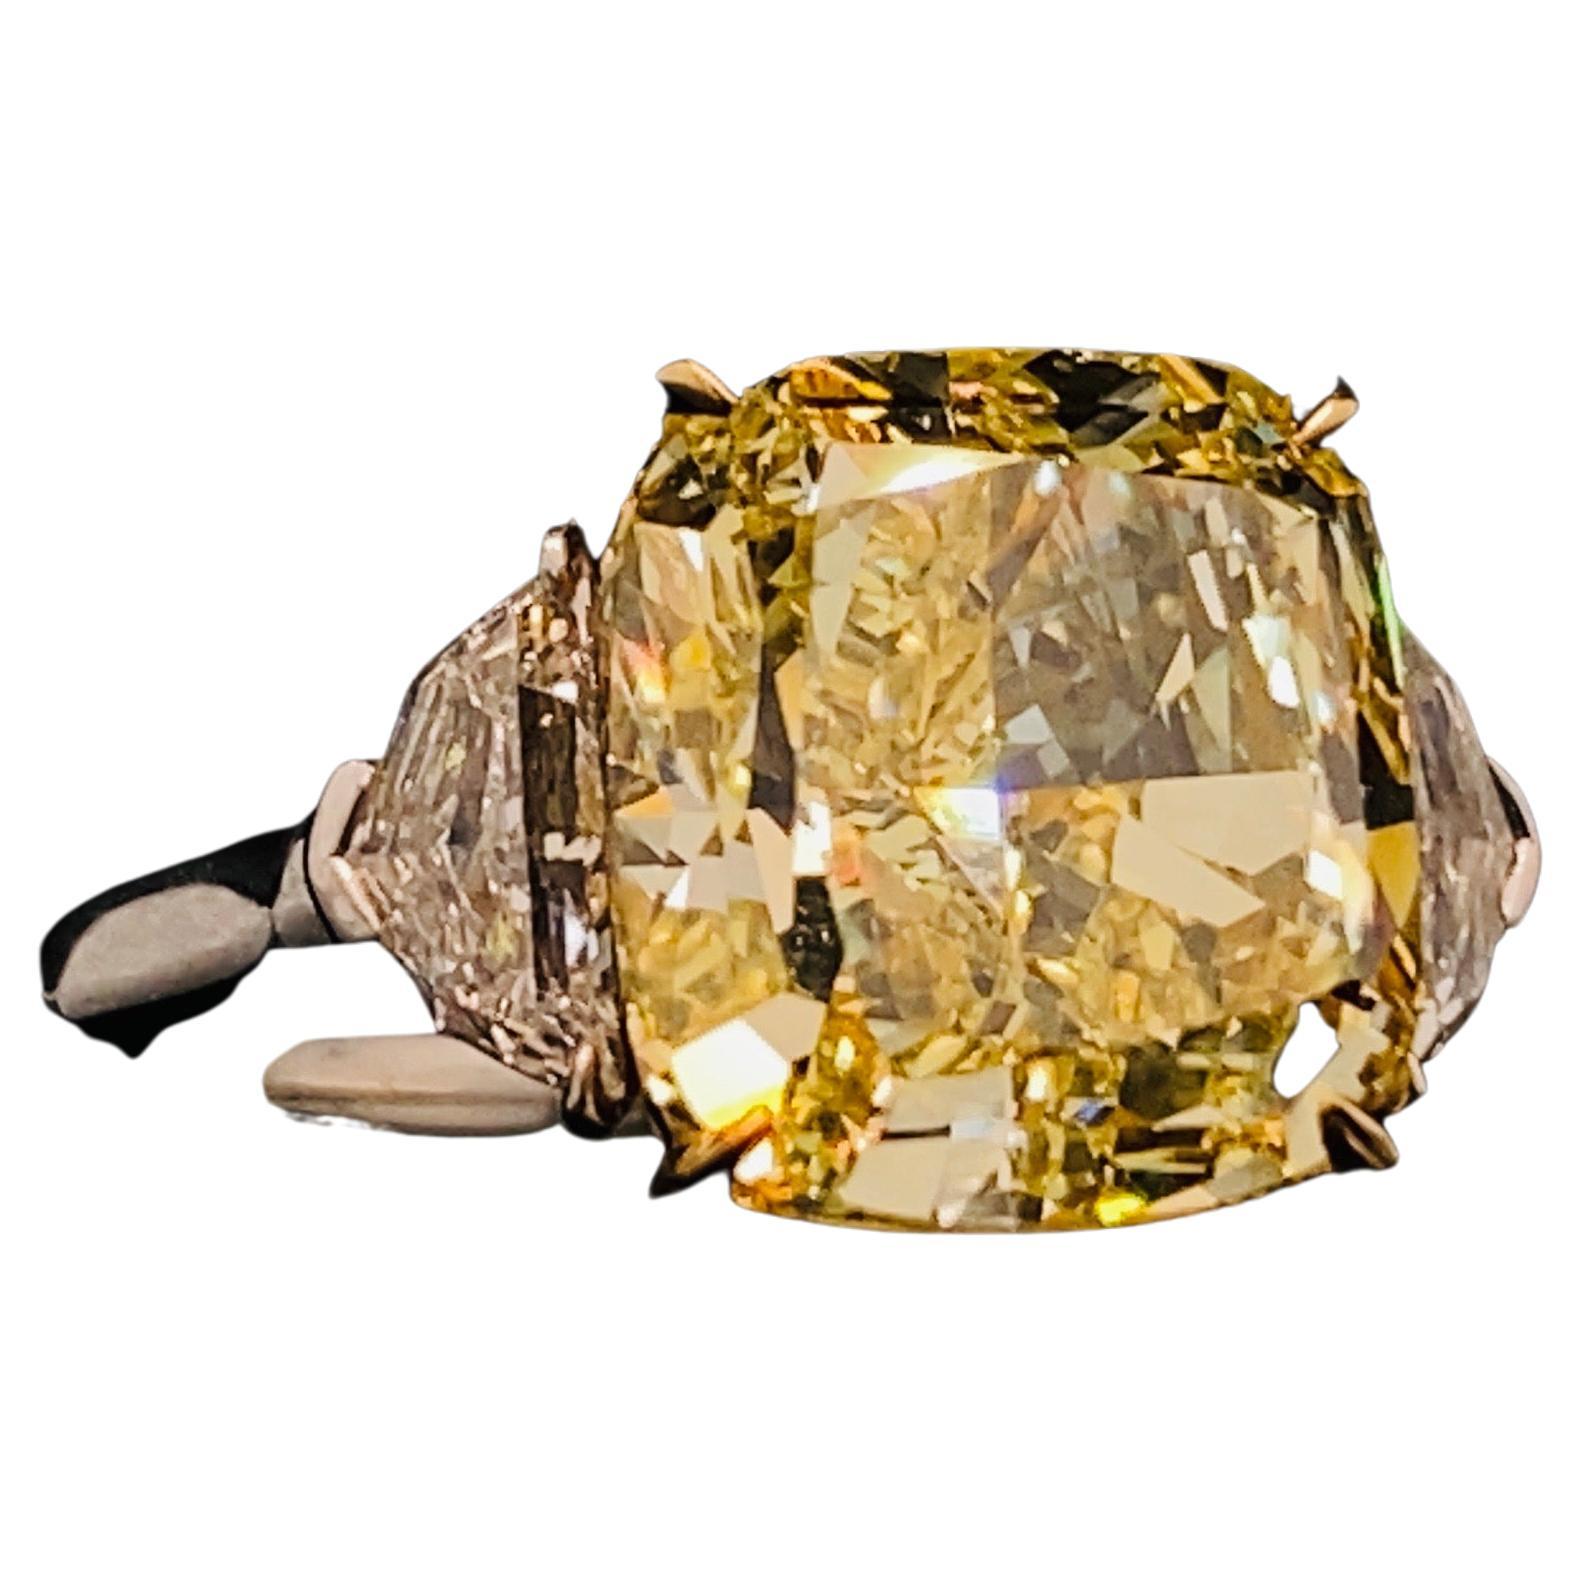 Aus dem Tresor von Emilio Jewelry auf der berühmten New Yorker Fifth Avenue,
Mit einem ganz besonderen und seltenen GIA-zertifizierten natürlichen, intensiv gelben Diamanten in der Mitte. 
 Handgefertigt im Emilio Jewelry Atelier, das sich auf